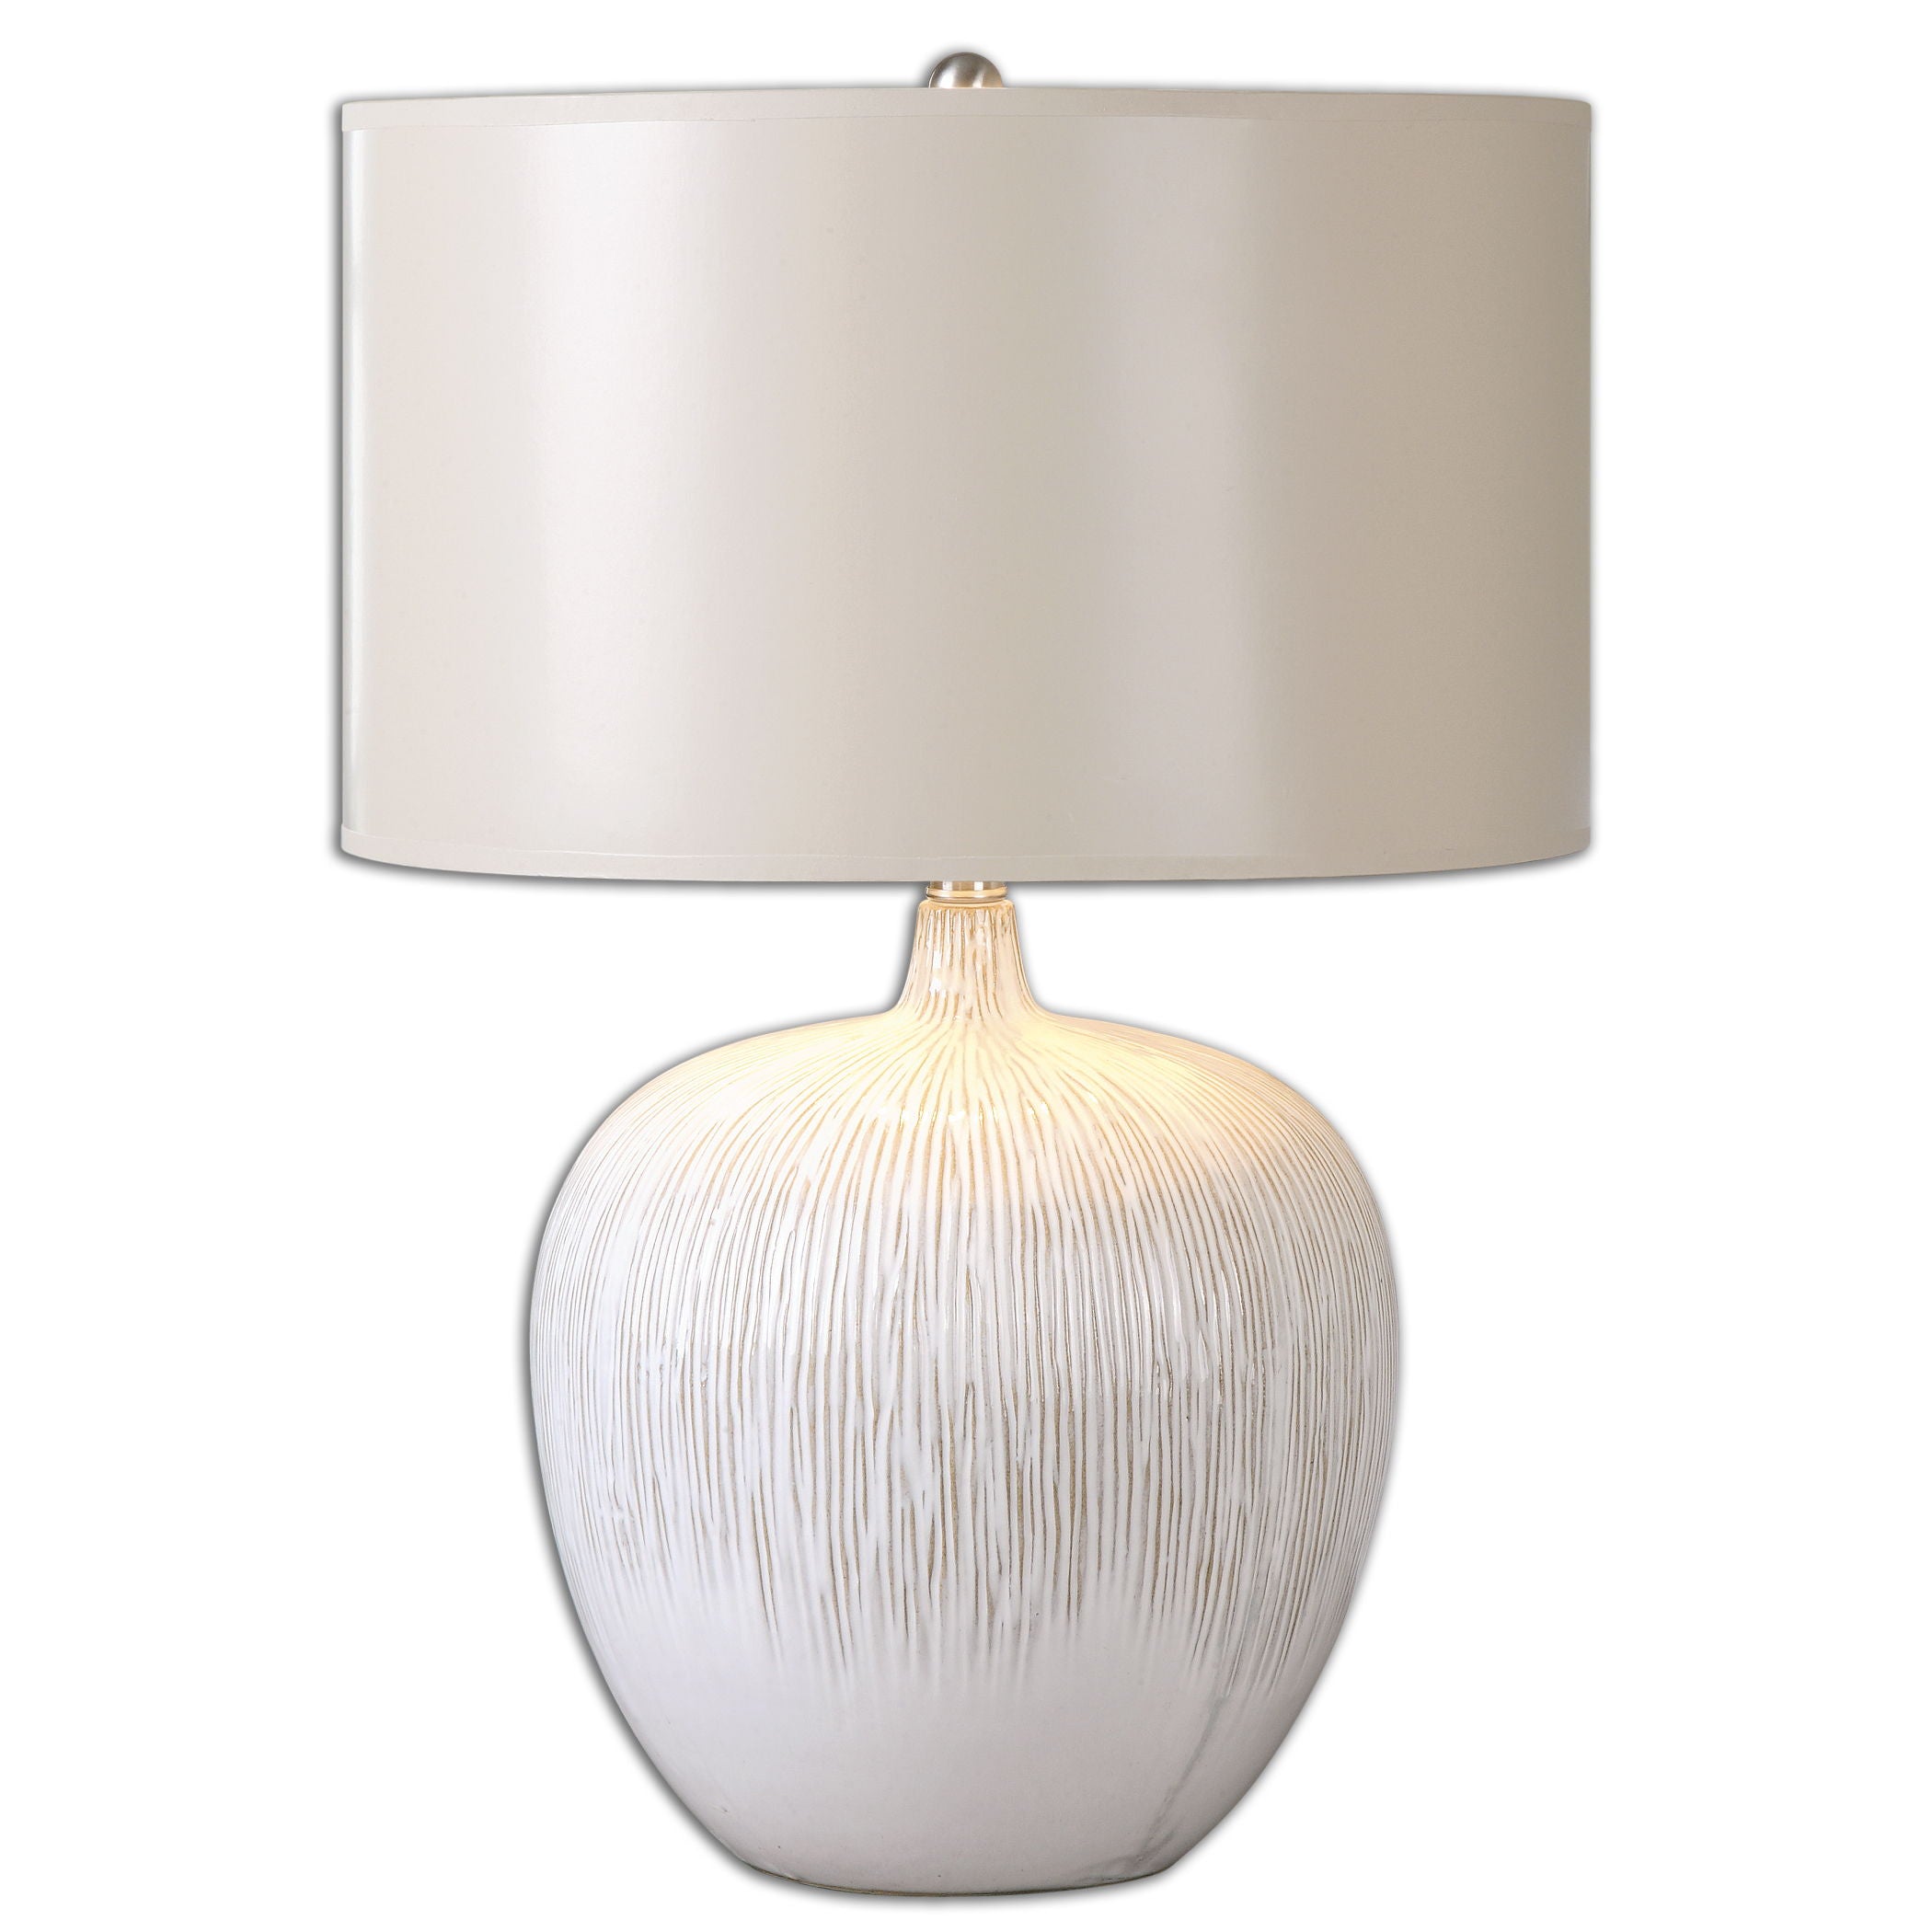 Georgios - Textured Ceramic Lamp - White